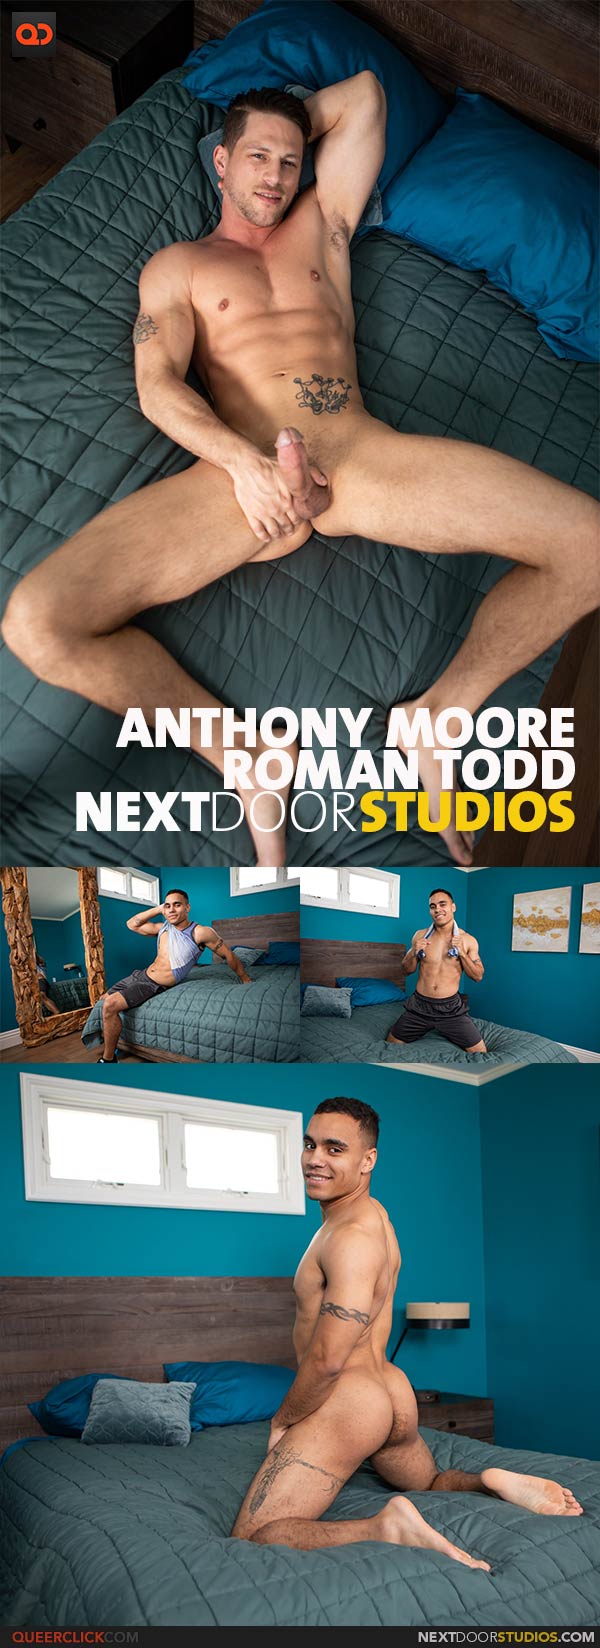 NextDoorStudios: Anthony Moore and Roman Todd